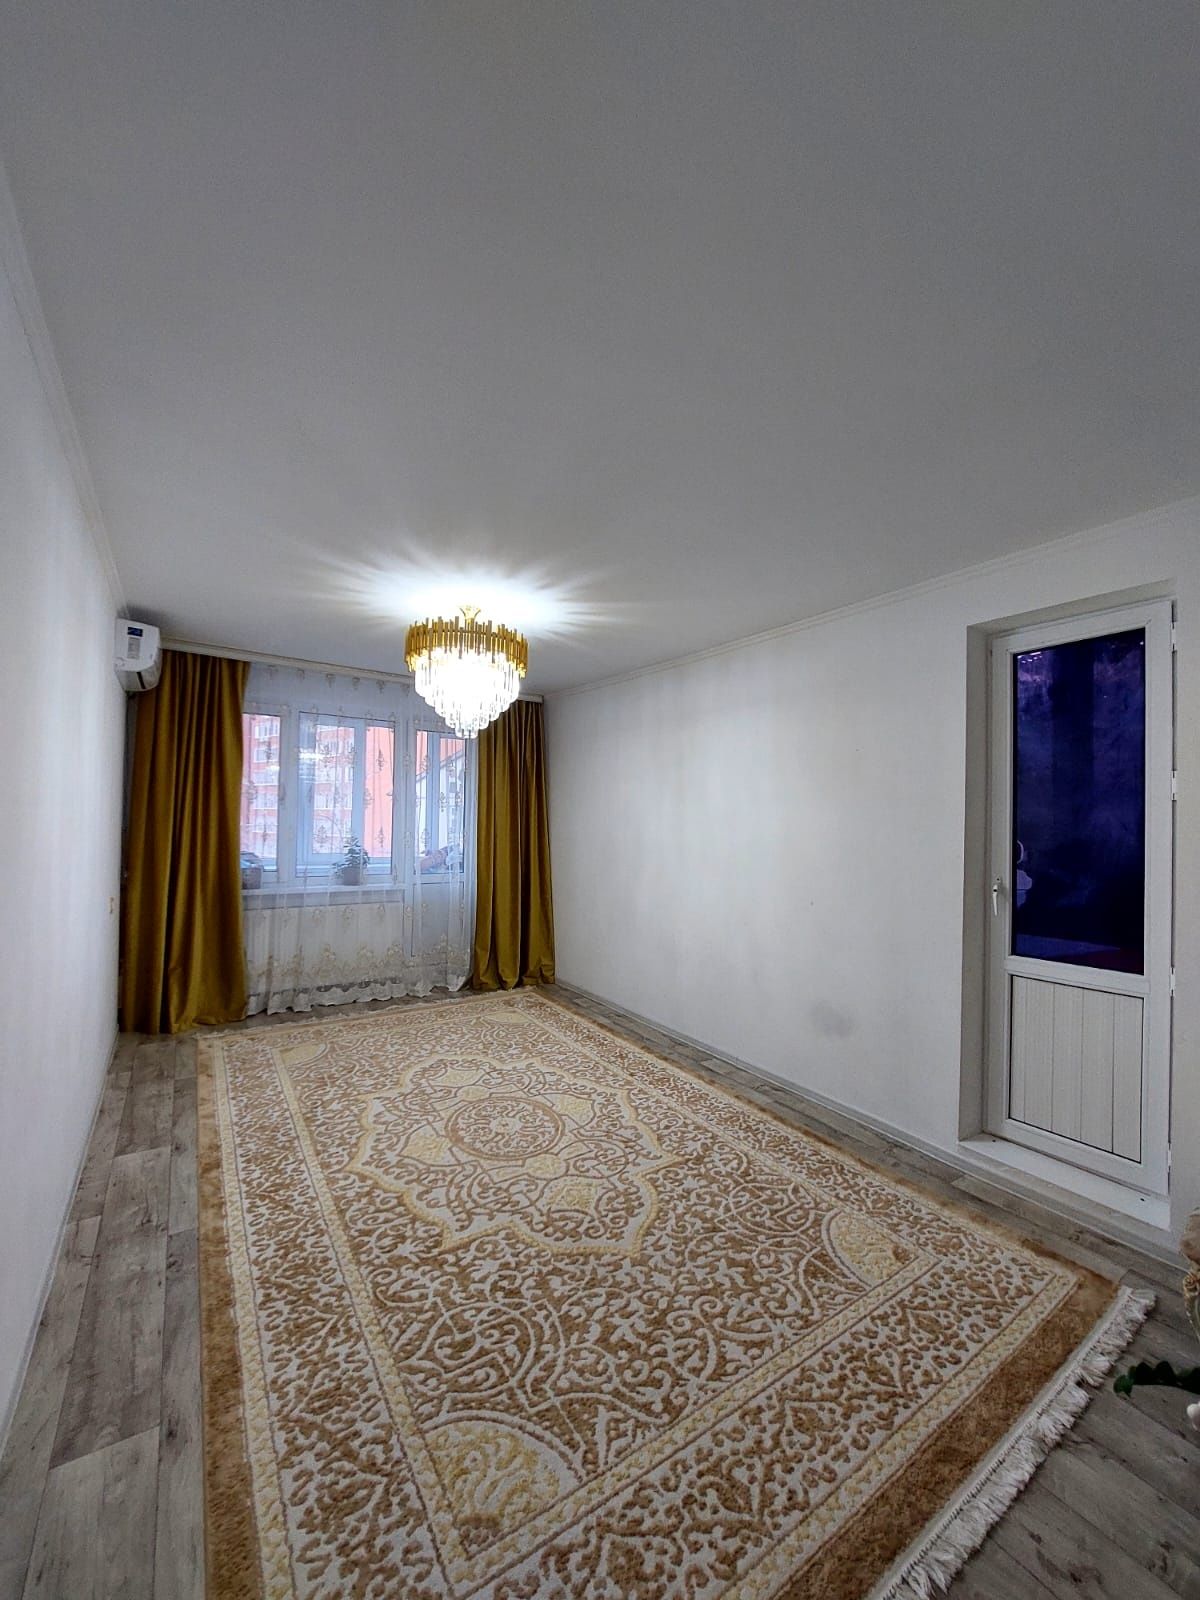 Продается 4х-комнатная квартира в районе Зигзаг